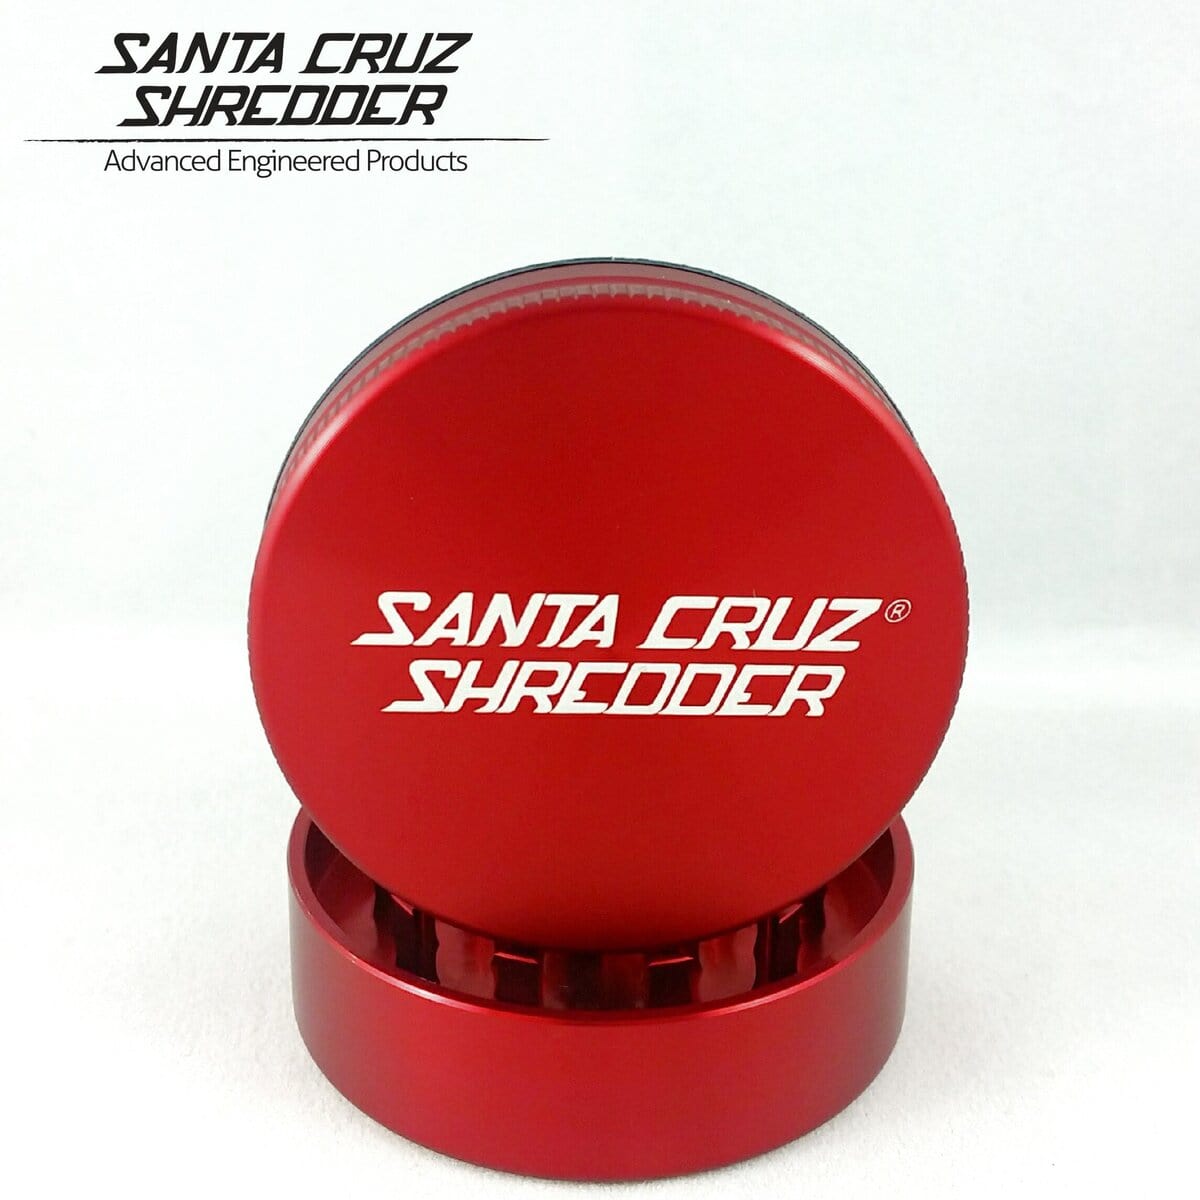 Santa Cruz Shredder Grinder Red Santa Cruz Shredder 2 Piece Medium Grinder